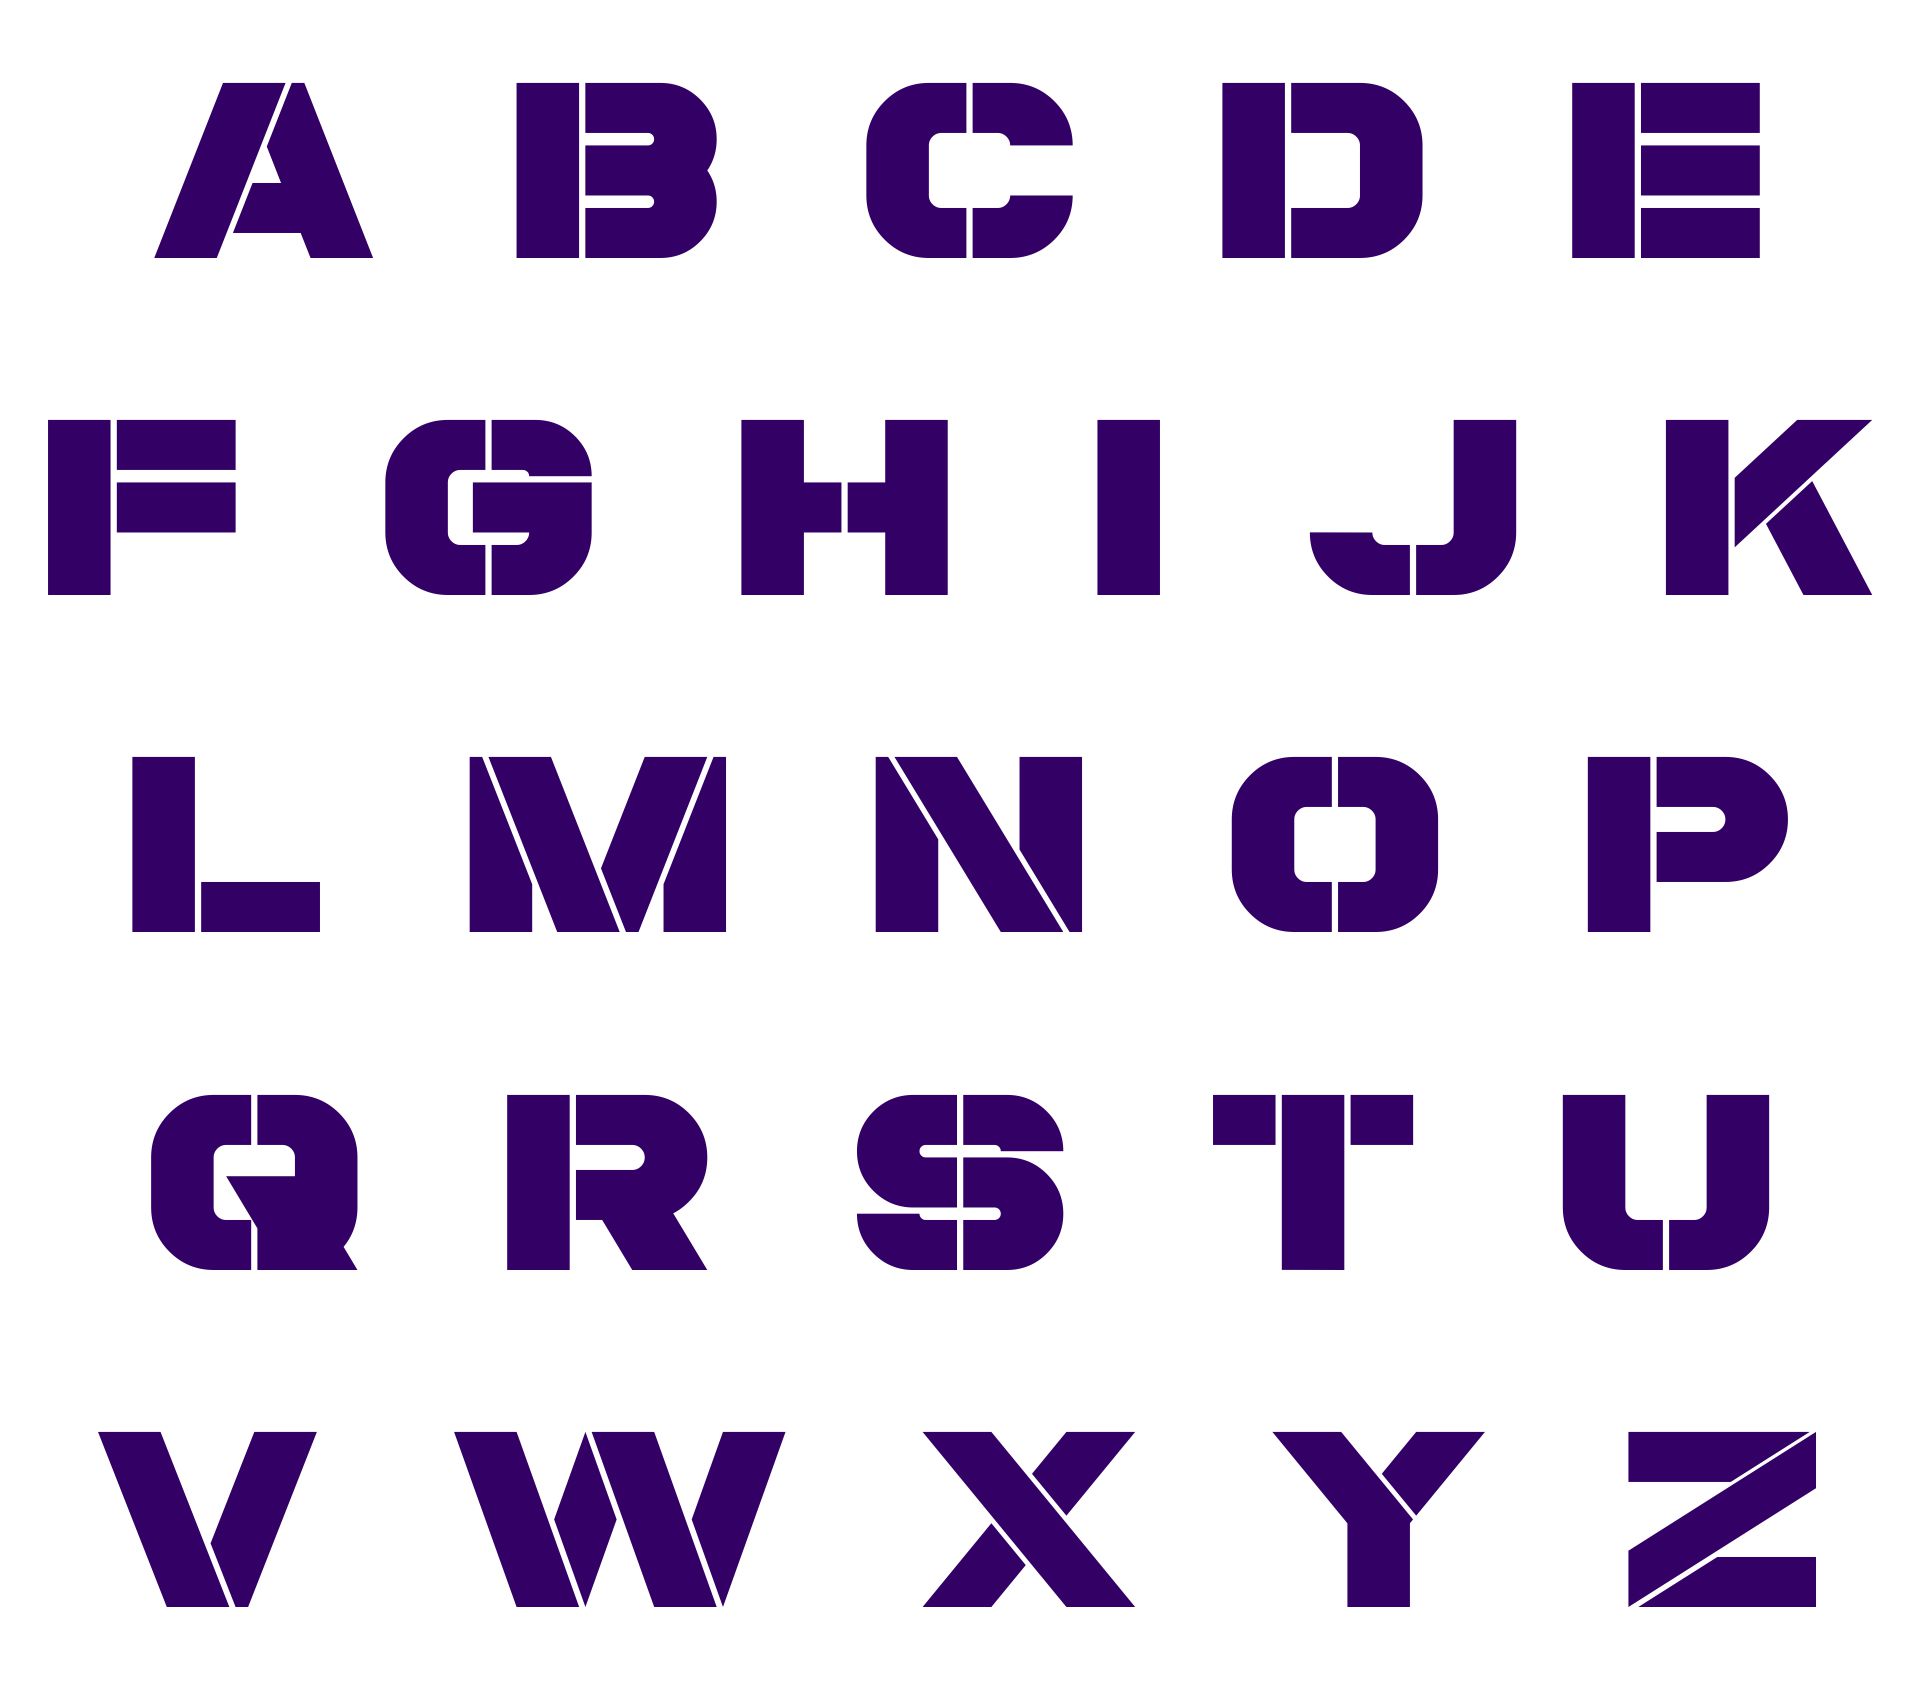 i-teacher-printable-alphabet-games-memory-letter-tiles